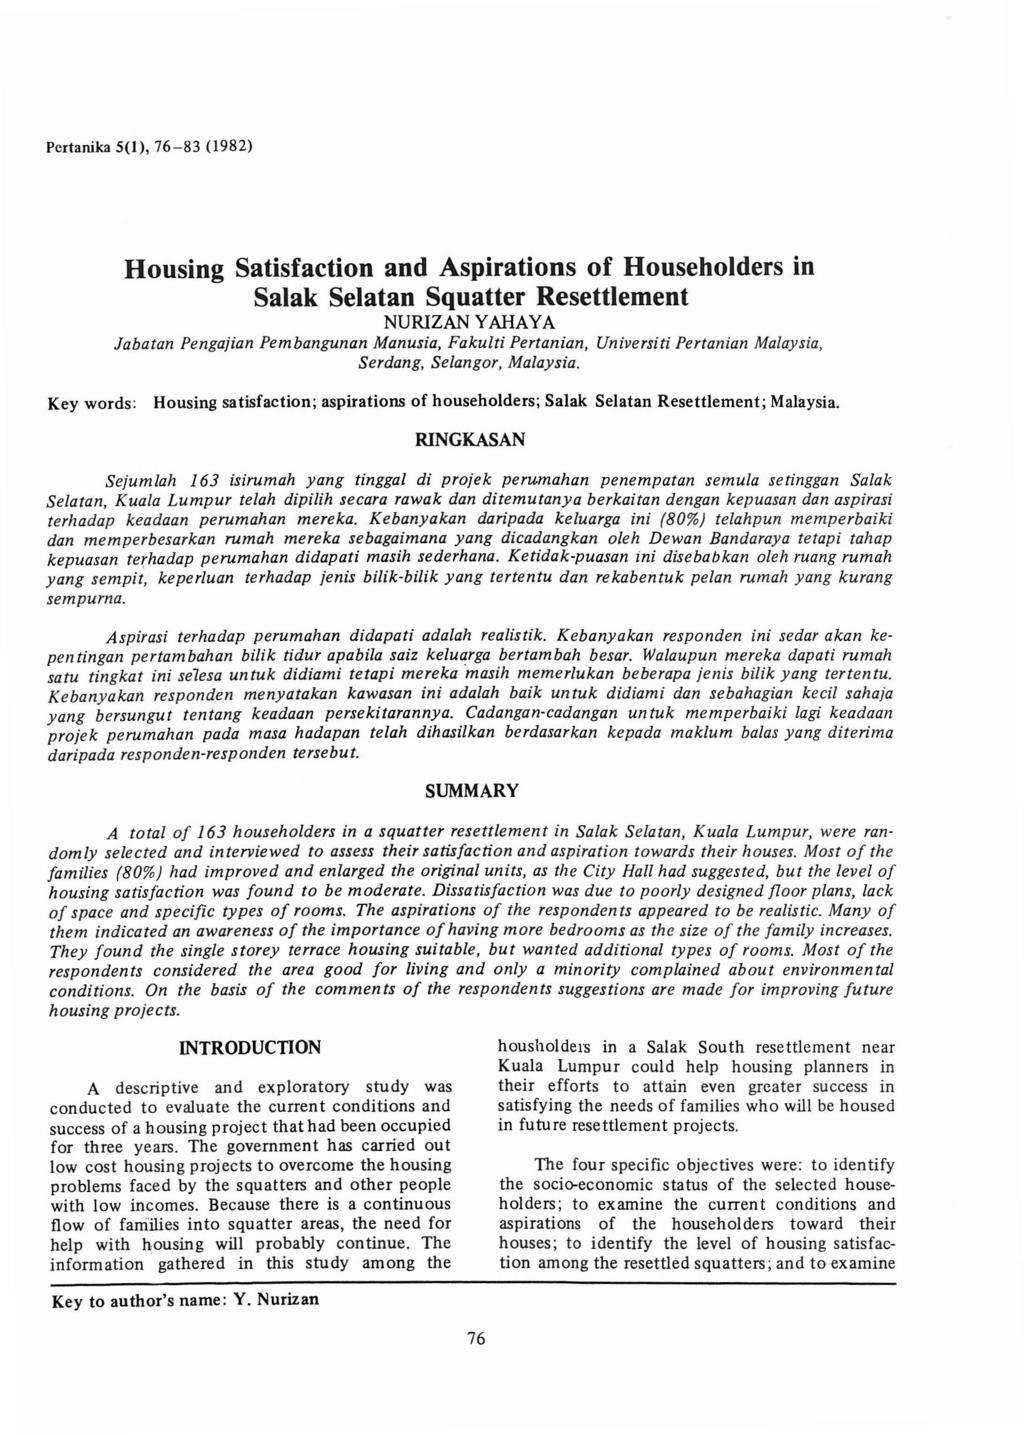 Pcrtanika 5(1), 76-83 (1982) Housing Satisfaction and Aspirations of Householders in Salak Selatan Squatter Resettlement NURIZAN YAHAYA labatan Pengajian Pembangunan Manusia, Fakulti Pertanian,